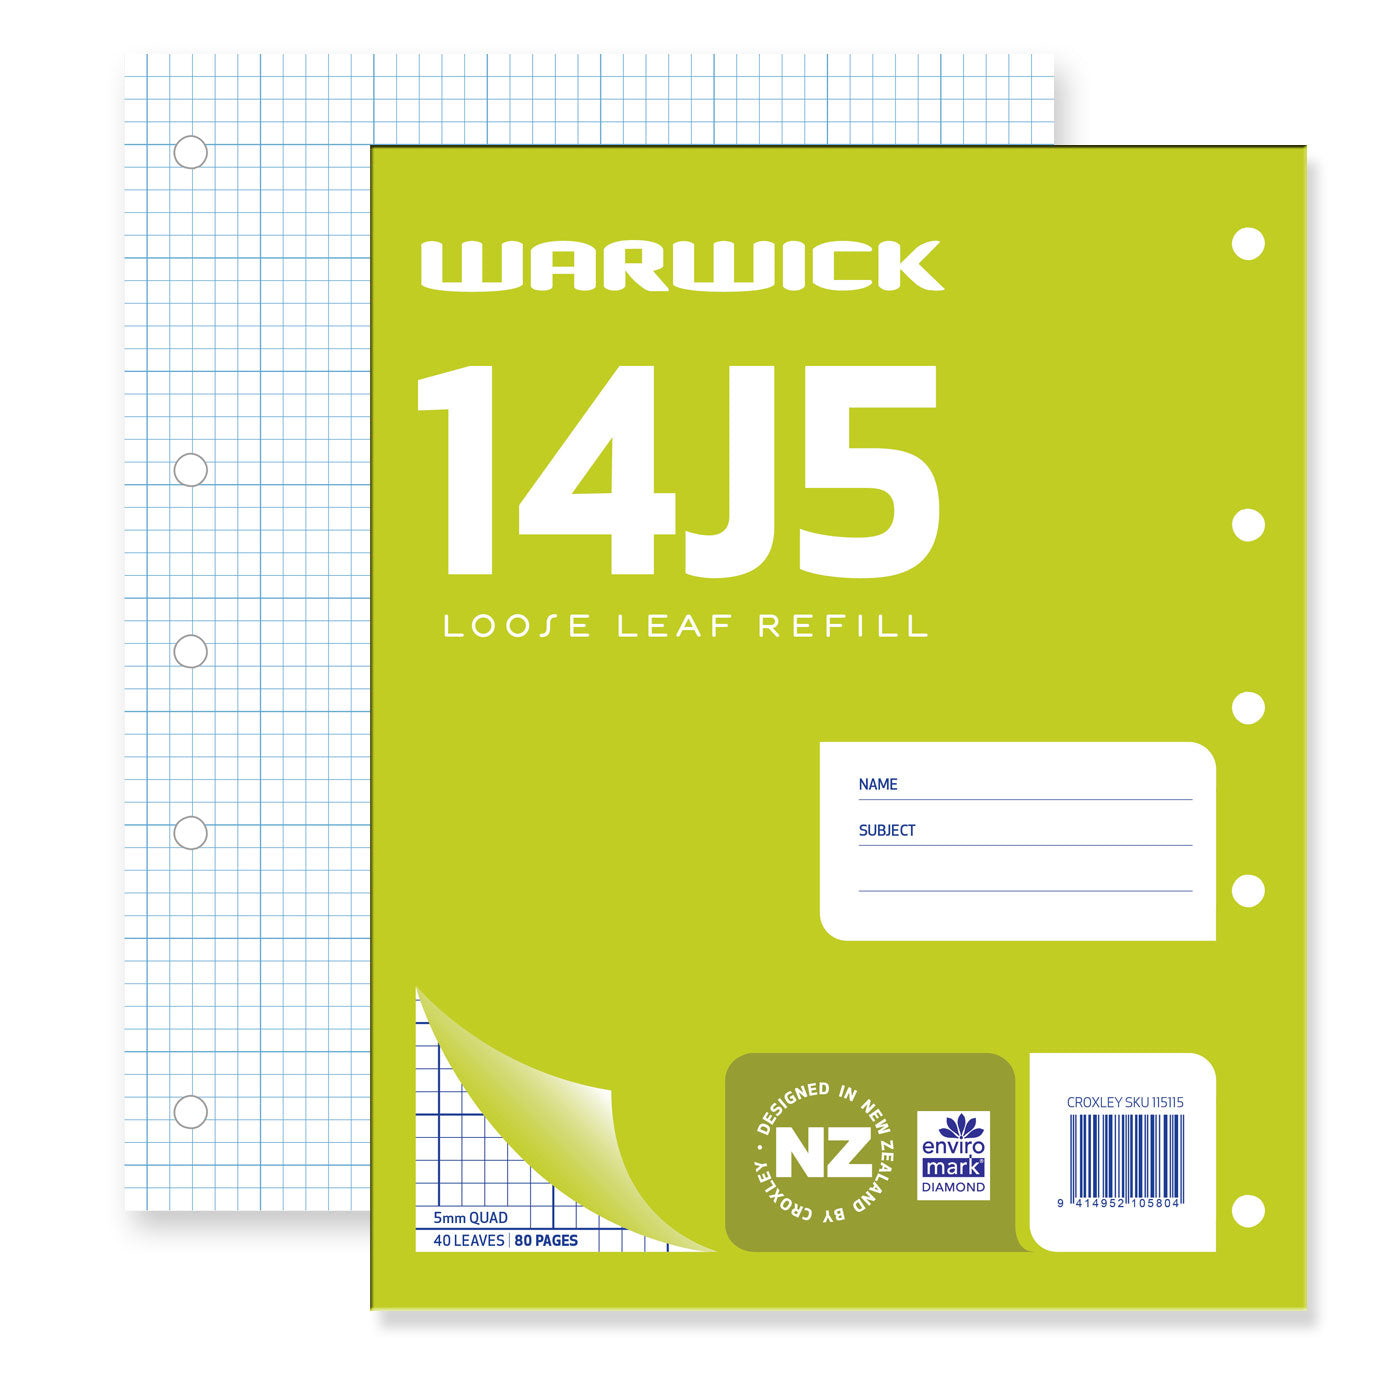 WARWICK REFILL 14J5 LOOSE LEAF 40 LEAF 5MM QUAD 255X205MM